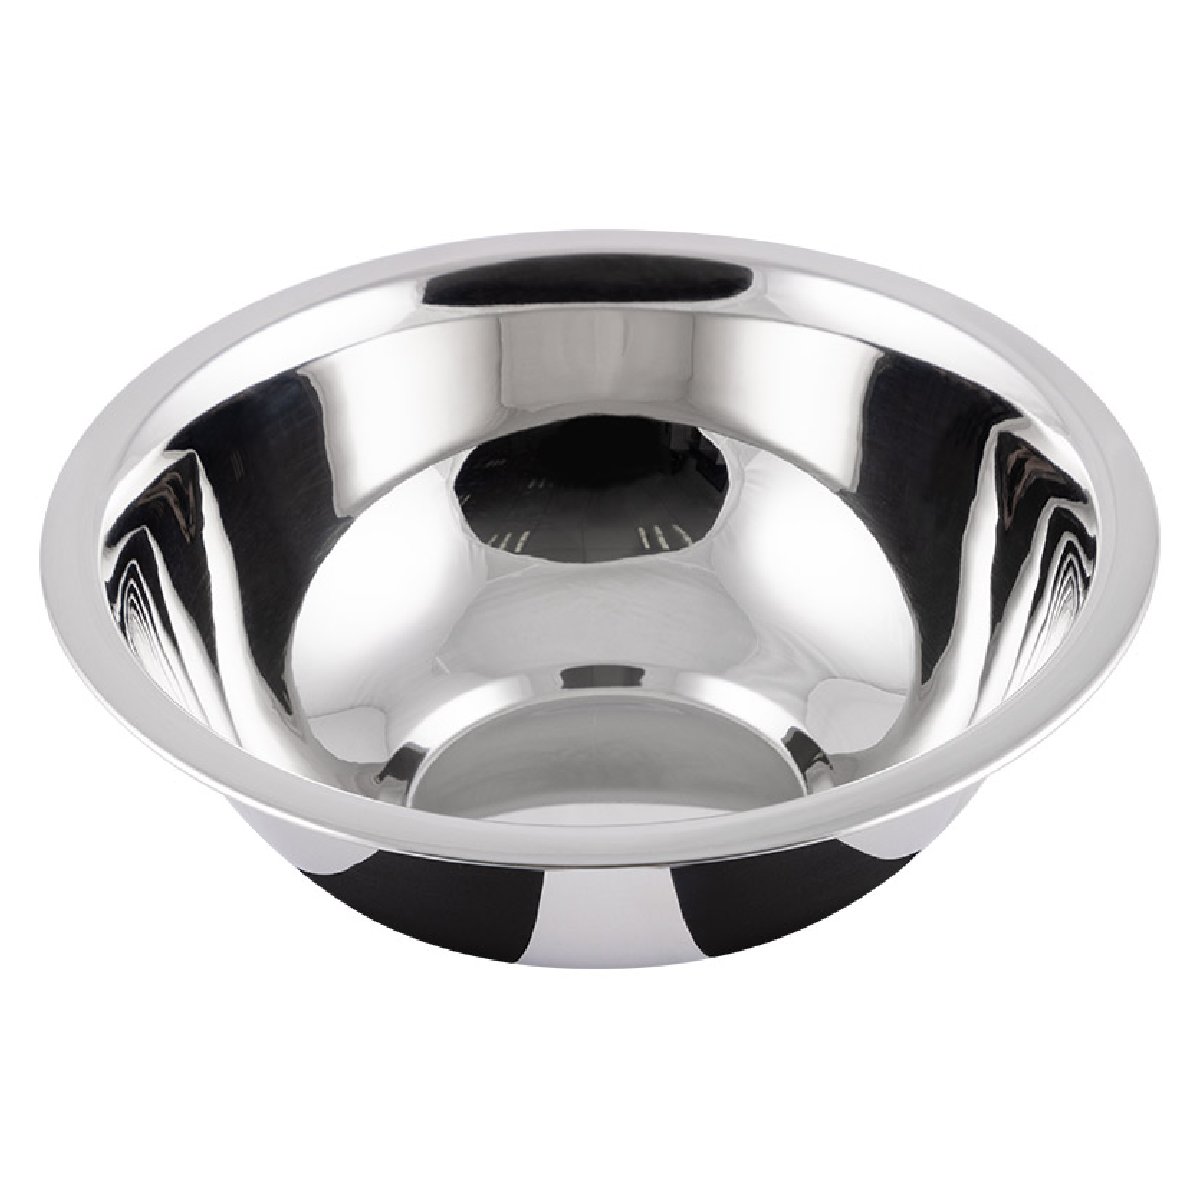 Миска Bowl-Roll-15, объем 600 мл, нержавеющая сталь, зеркальная полировка, 16x6 см, Mallony (103825)